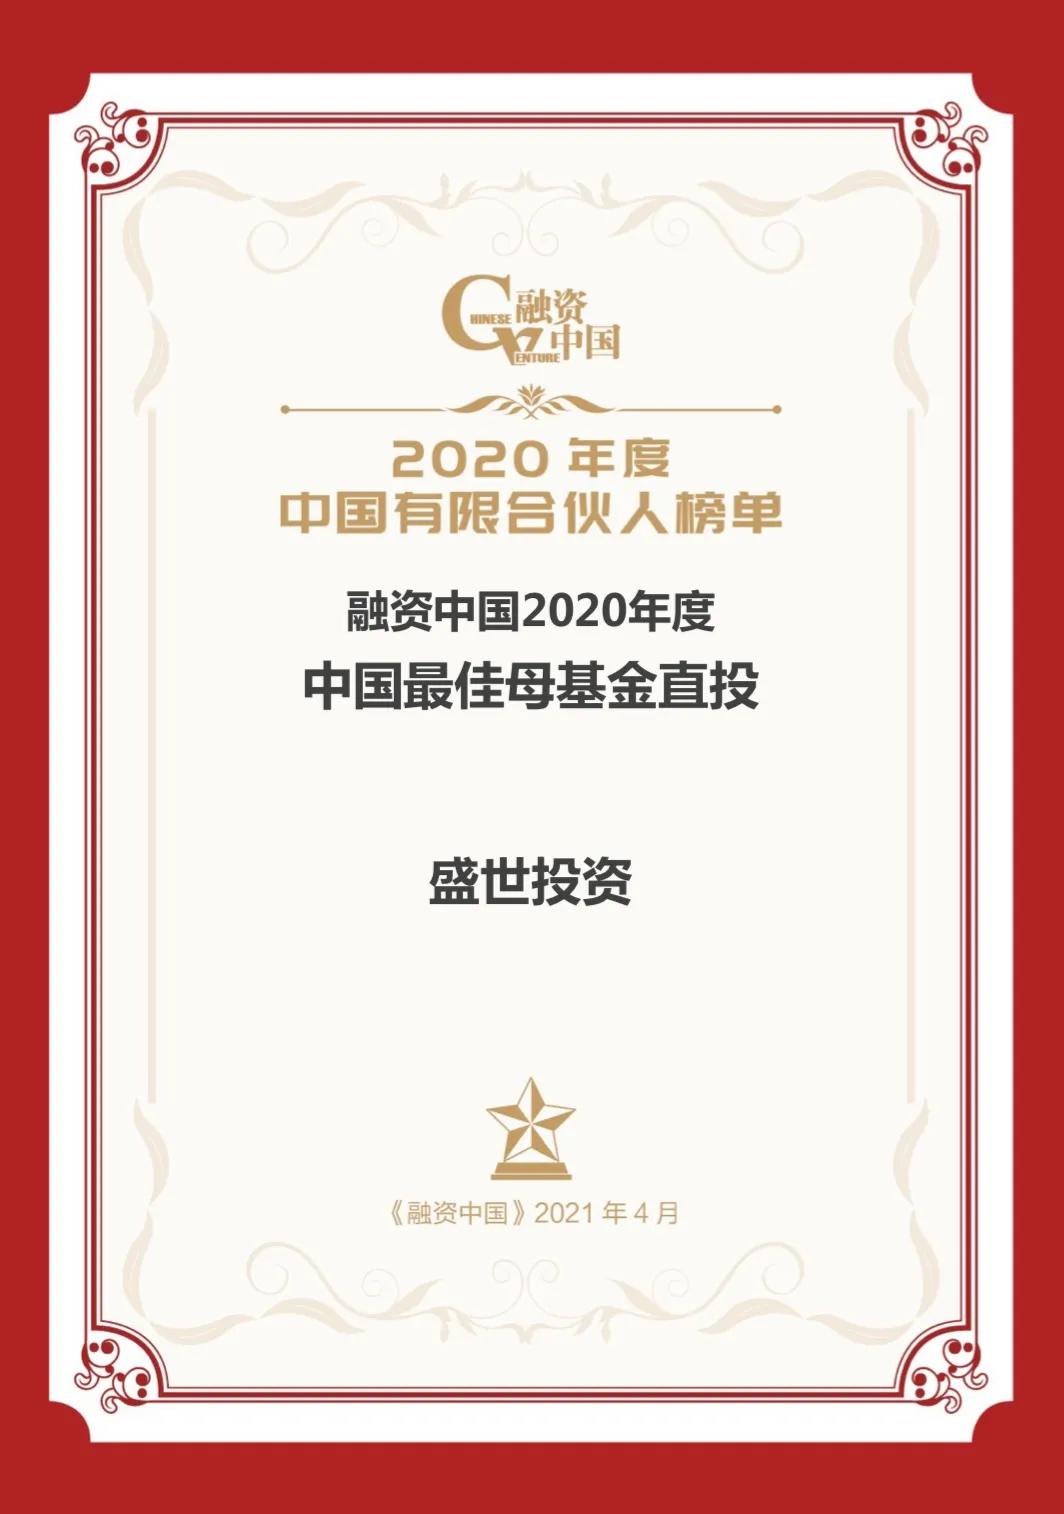 盛世投资荣获融资中国2020年度LP榜单6项大奖